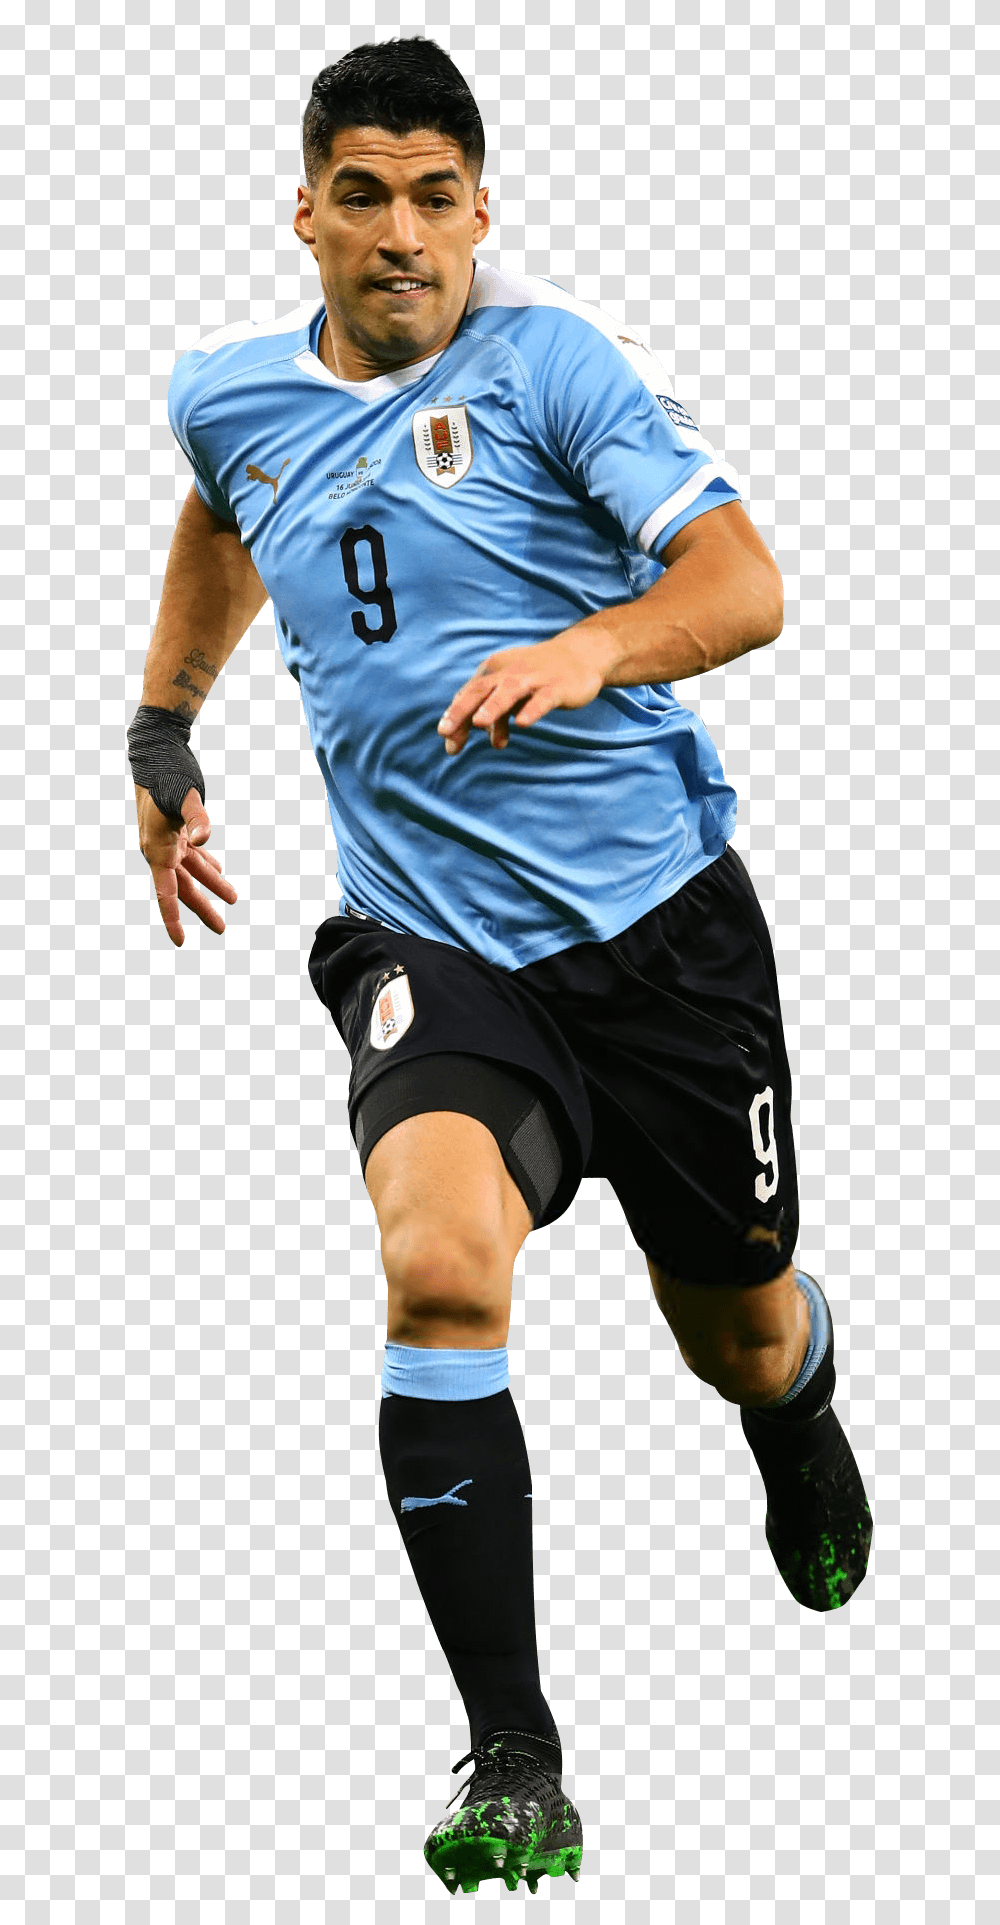 Luis Suarezrender Soccer Player, Sphere, Shorts, Person Transparent Png